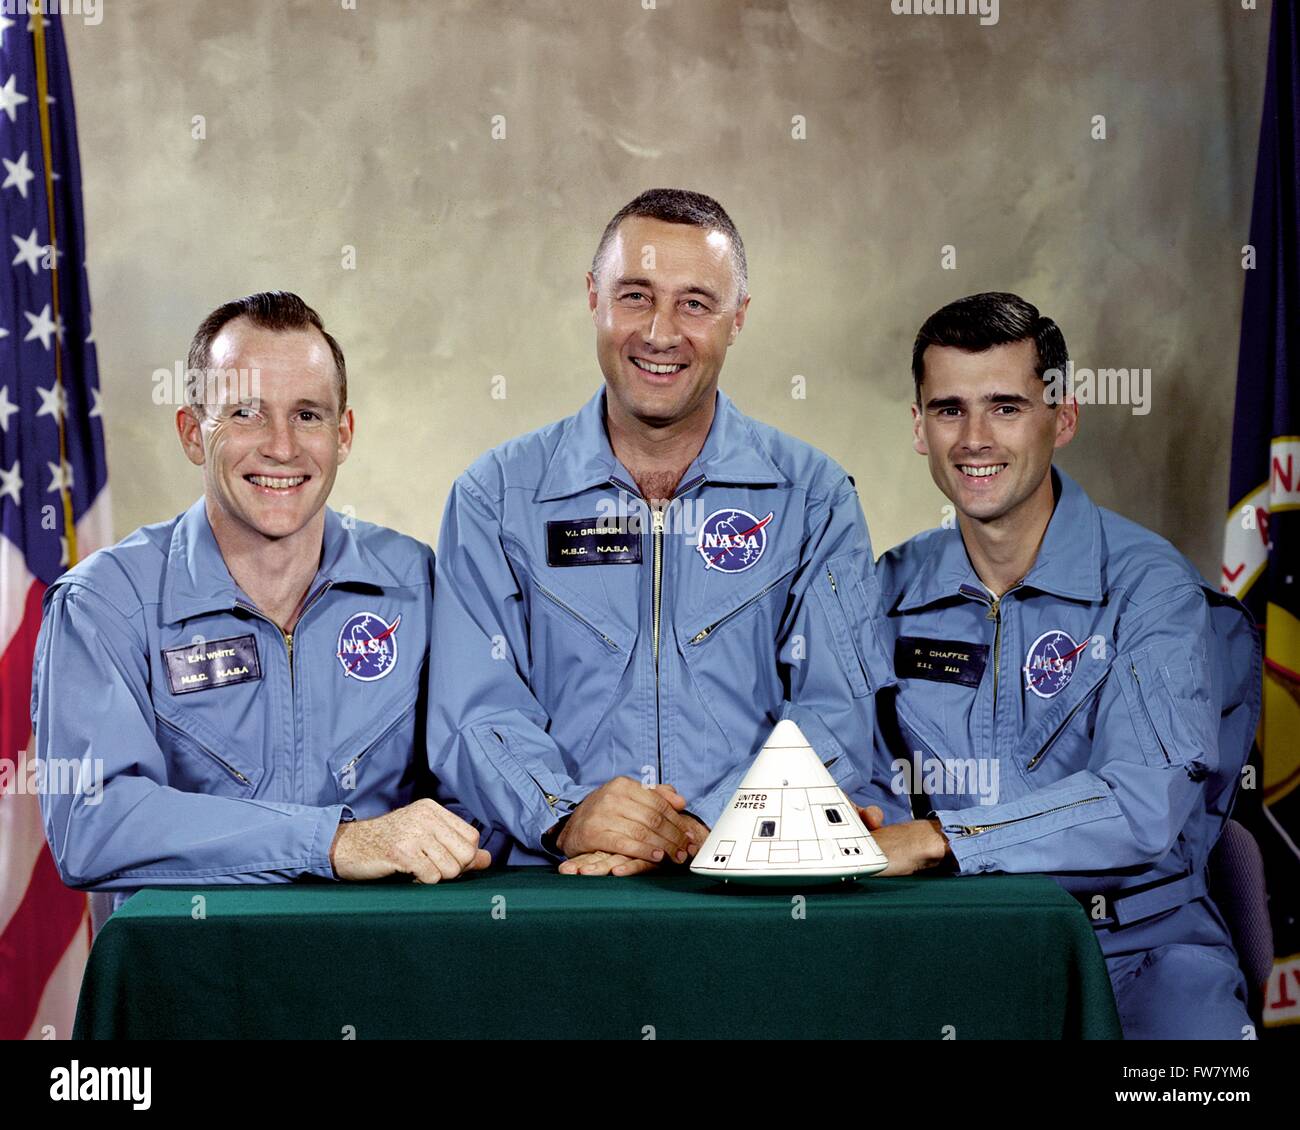 L'originale il primo equipaggio del primo manned Apollo missione spaziale posano per una foto di gruppo nel loro volo blu si adatta al Johnson Space Center Marzo 31, 1966 a Houston, Texas. Da sinistra a destra sono: Edward H. White II, Gus Virgil Grissom e Roger Chaffee. Il 27 gennaio 1967 durante una routine lancio simulato test a bordo della Apollo Saturn V Moon rocket, un corto circuito elettrico all'interno dell'Apollo modulo di comando acceso l'ossigeno puro ambiente e nel giro di pochi secondi tutti e tre Apollo 1 il suo equipaggio perirono. Foto Stock